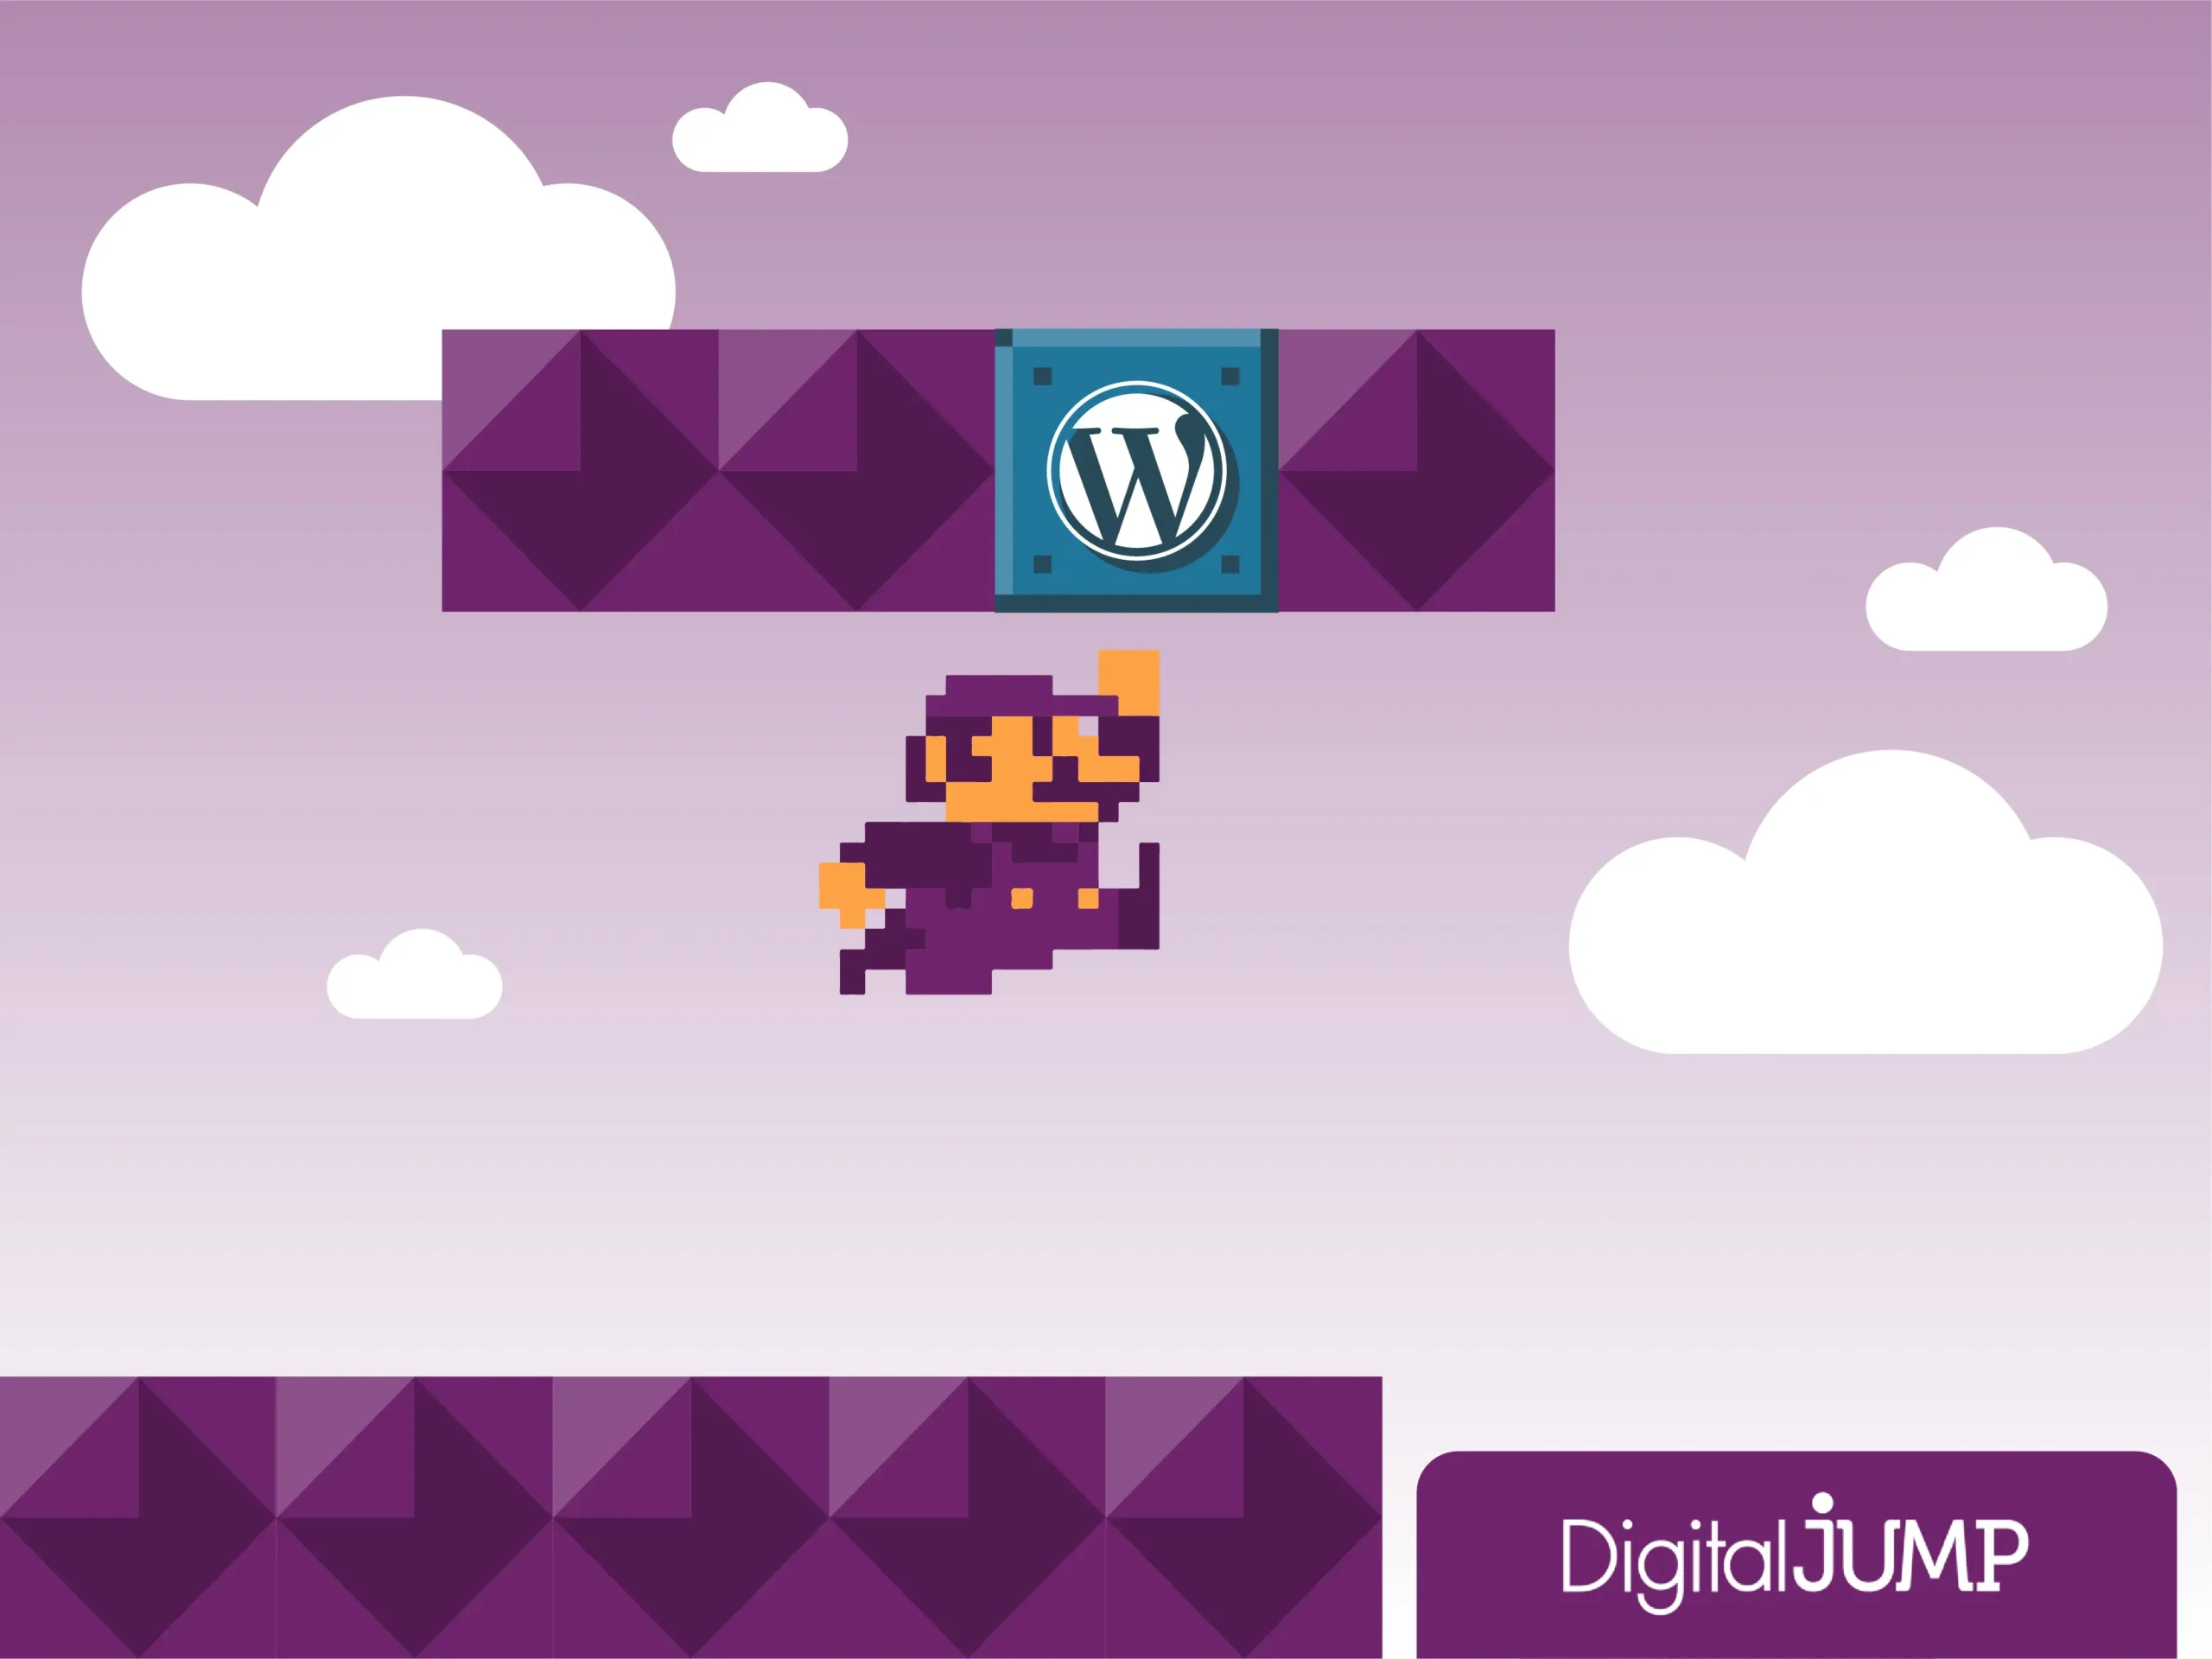 Mario bros saltando para golpear un bloque con el logo de Wordpress